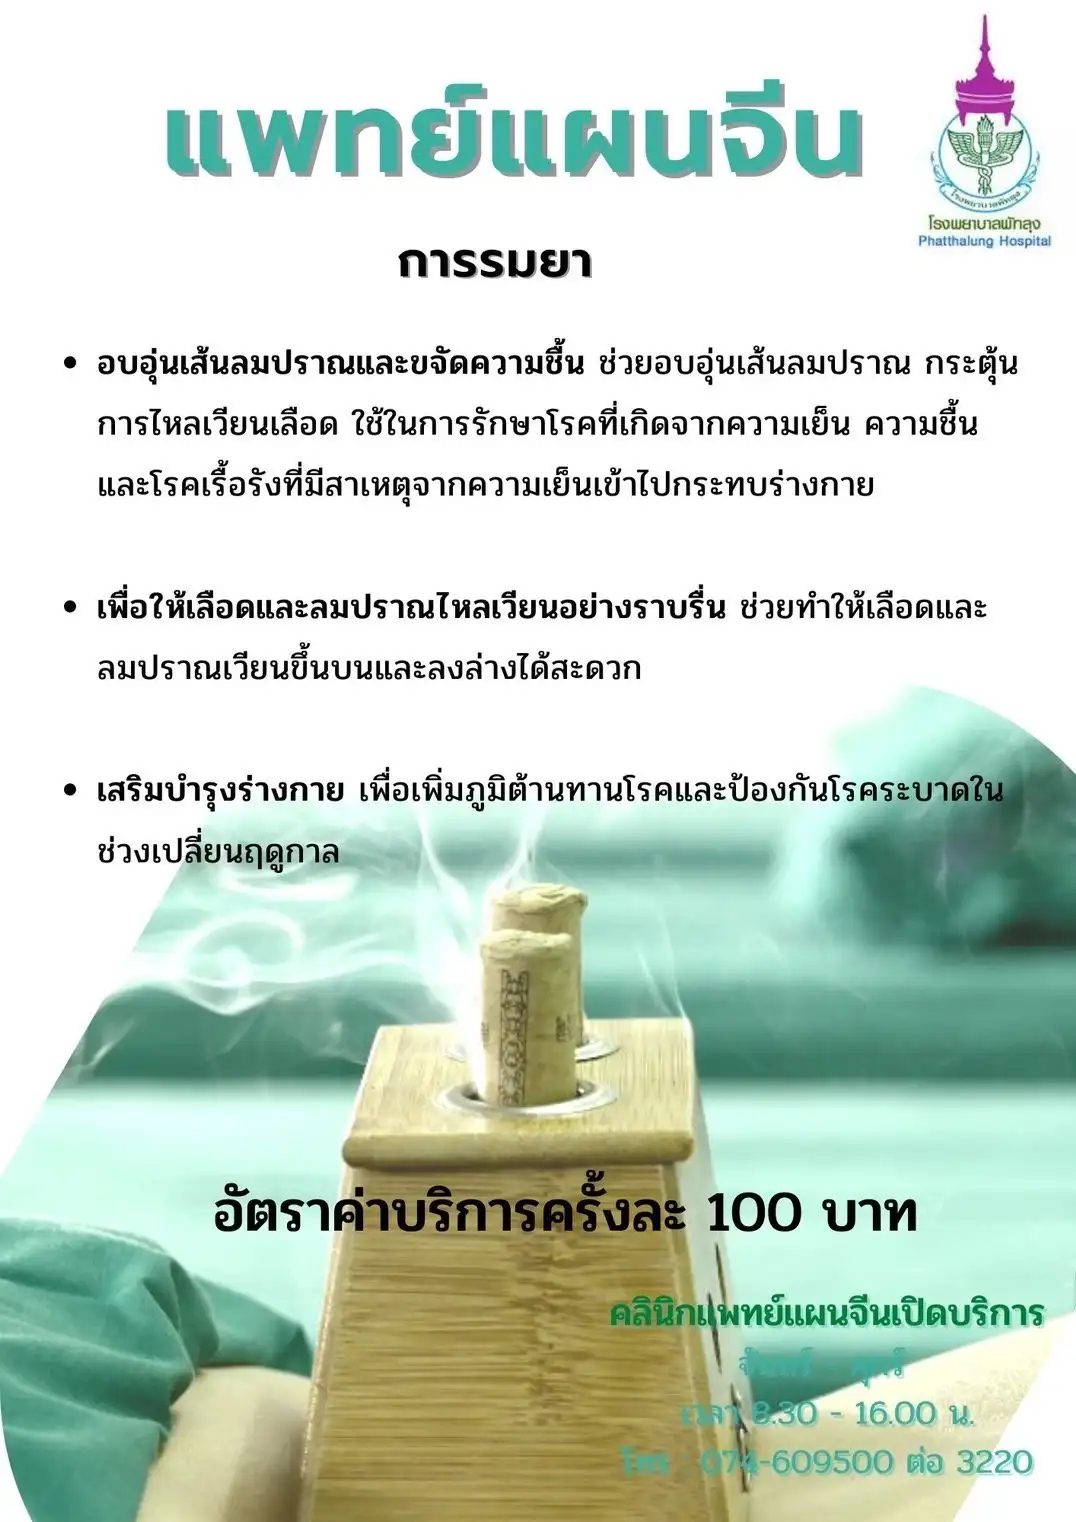 แพทย์แผนไทย แพทย์แผนจีน โรงพยาบาลพัทลุง พร้อมให้บริการแล้ว HealthServ